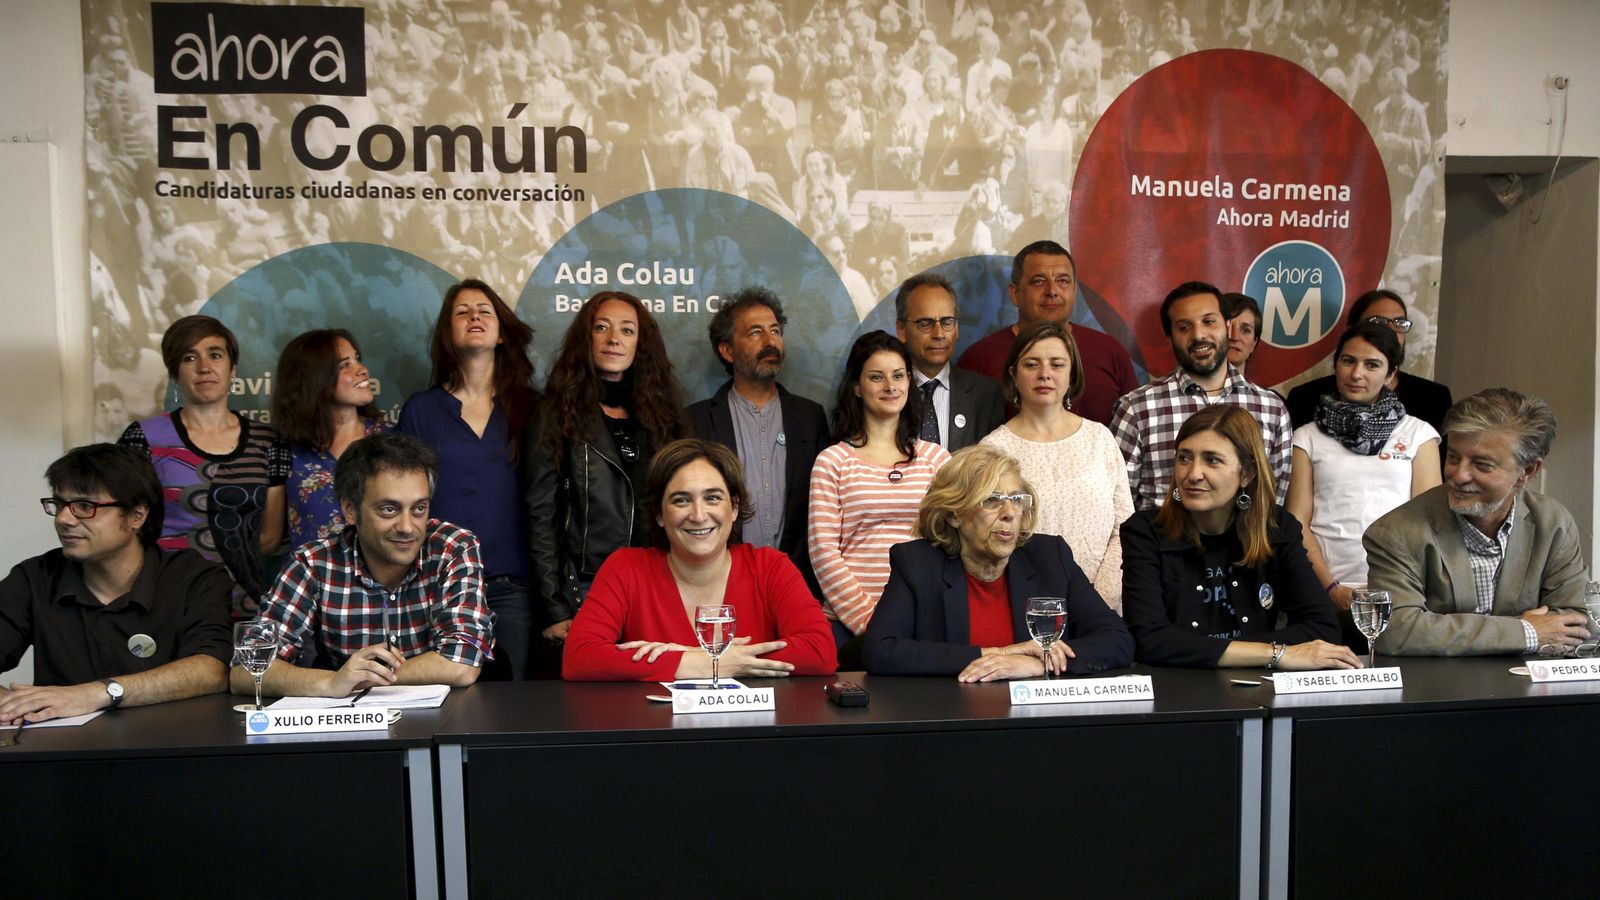 Foto: Ada Colau, alcaldesa de Barcelona (3i) junto a Manuela Carmena, alcaldesa de Madrid (3d). (EFE)